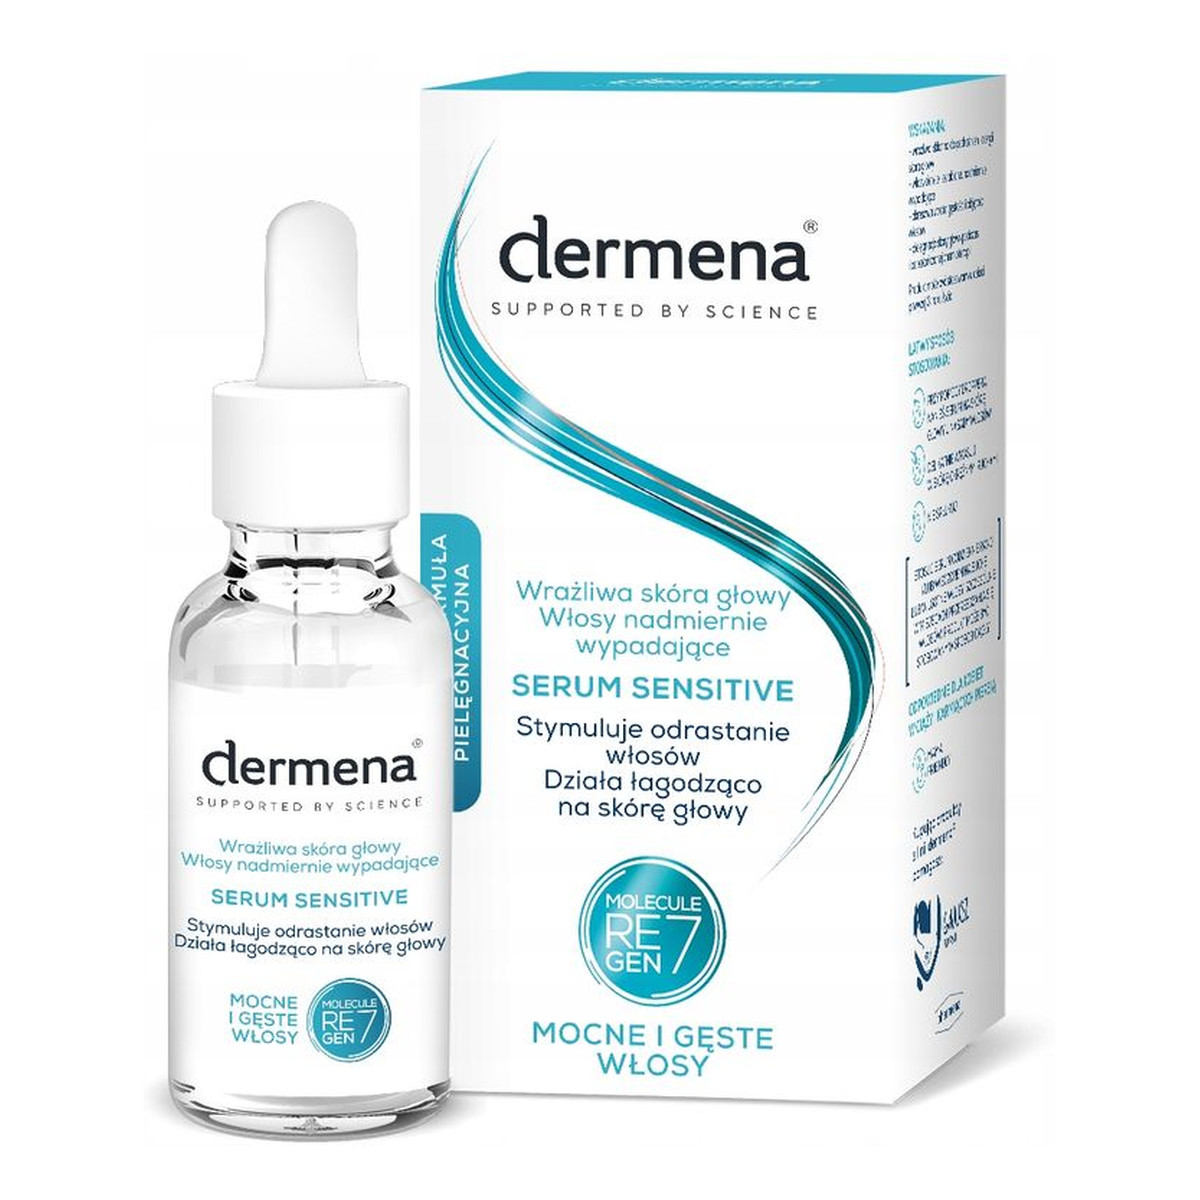 Dermena Serum Sensitive do wrażliwej skóry głowy i nadmiernie wypadających włosów 50ml